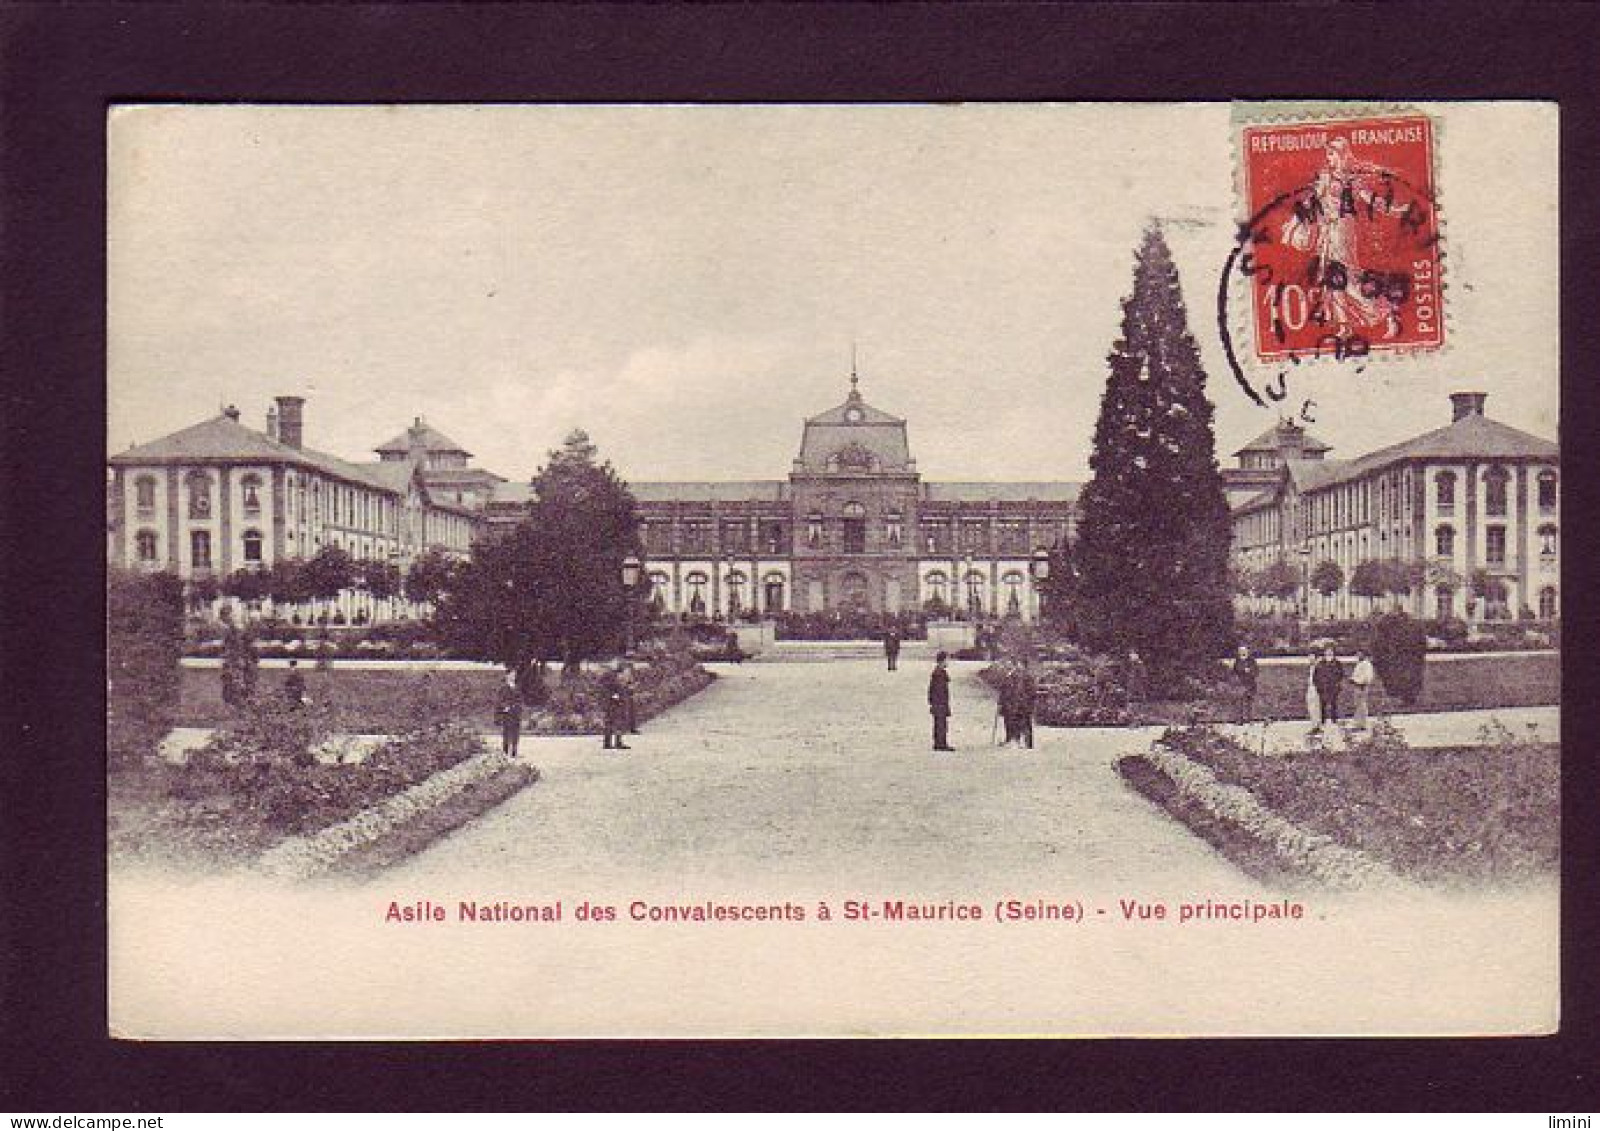 94 - SAINT-MAURICE - ASILE NATIONALE DES CONVALESCENTS - VUE PRINCIPALE  - Saint Maurice